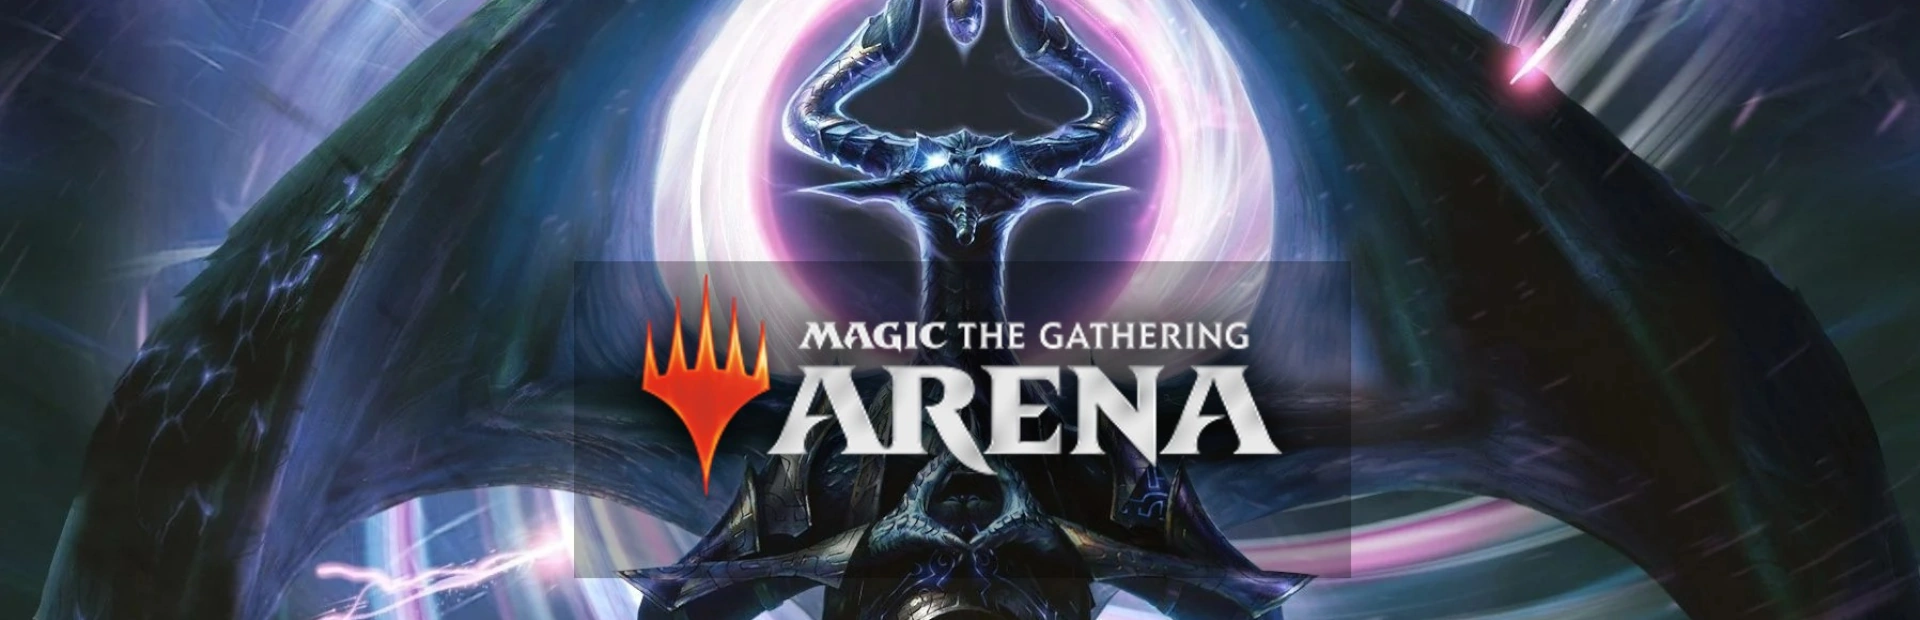 دانلود بازی Magic: The Gathering Arena برای PC | گیمباتو